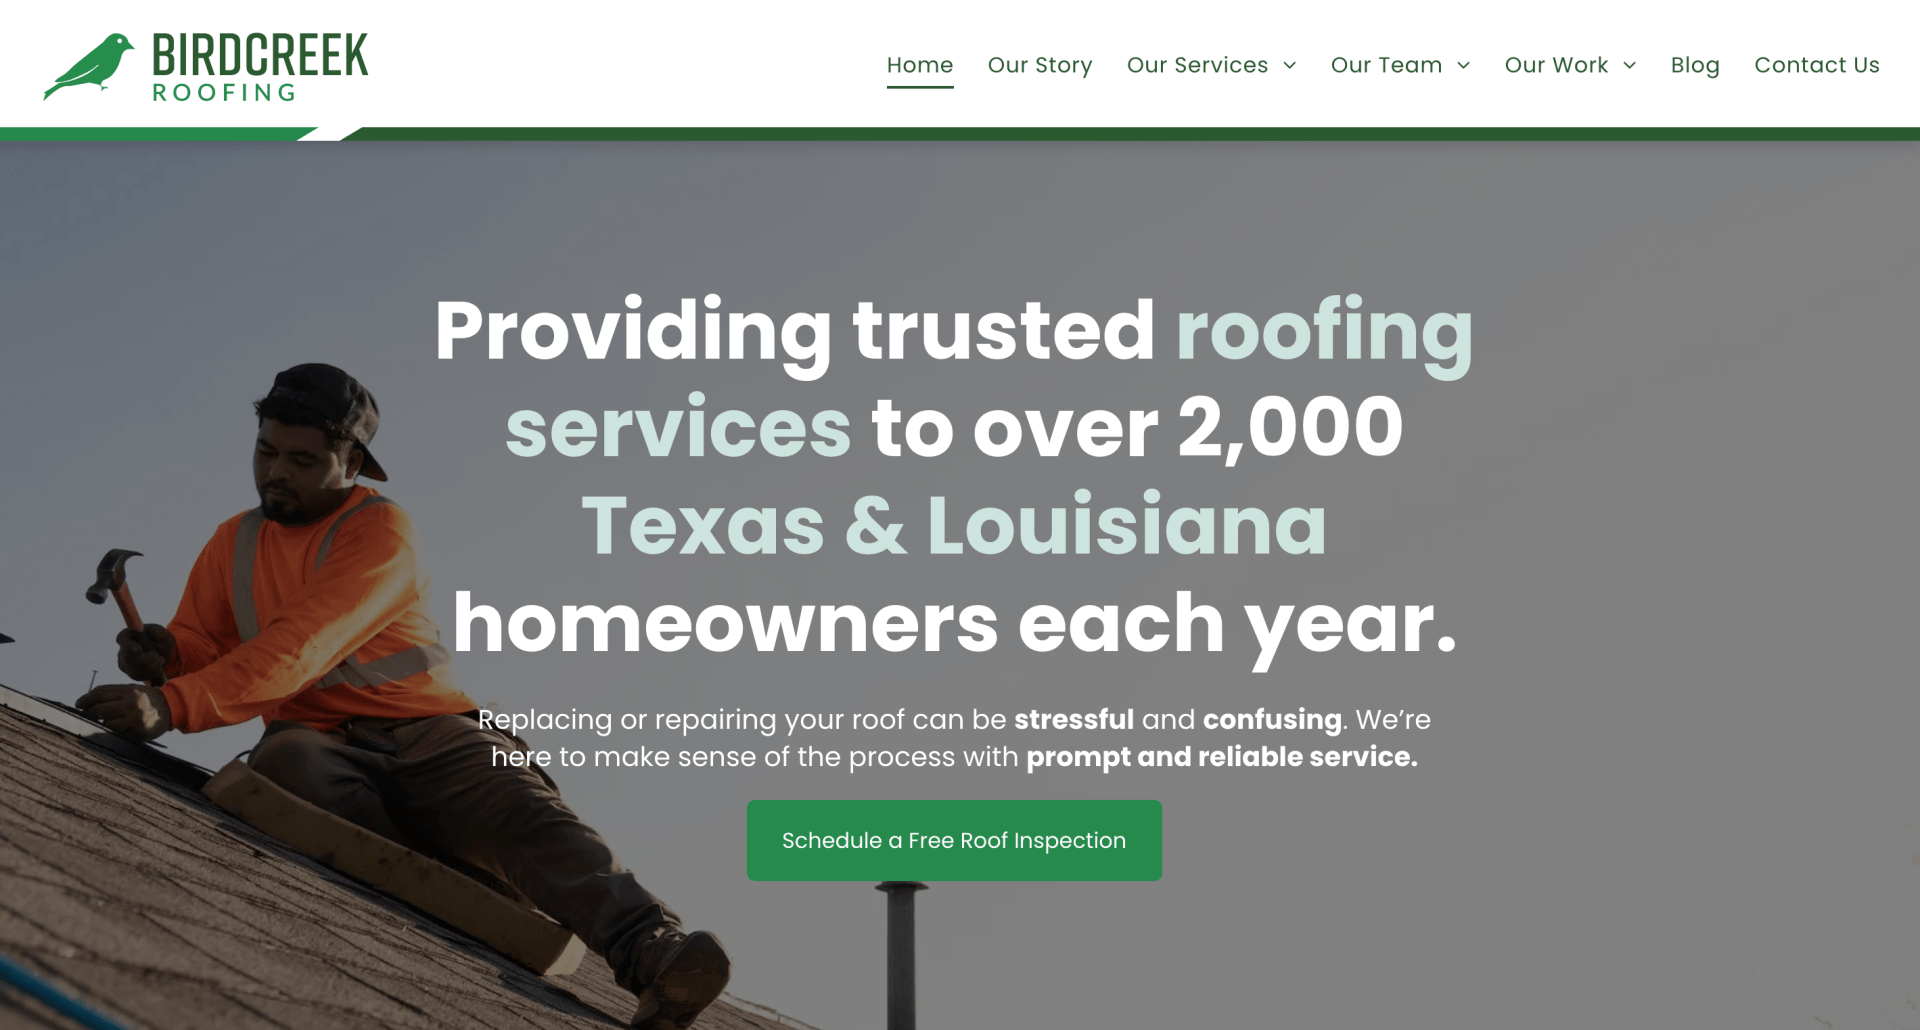 birdcreek roofing website design - homepage